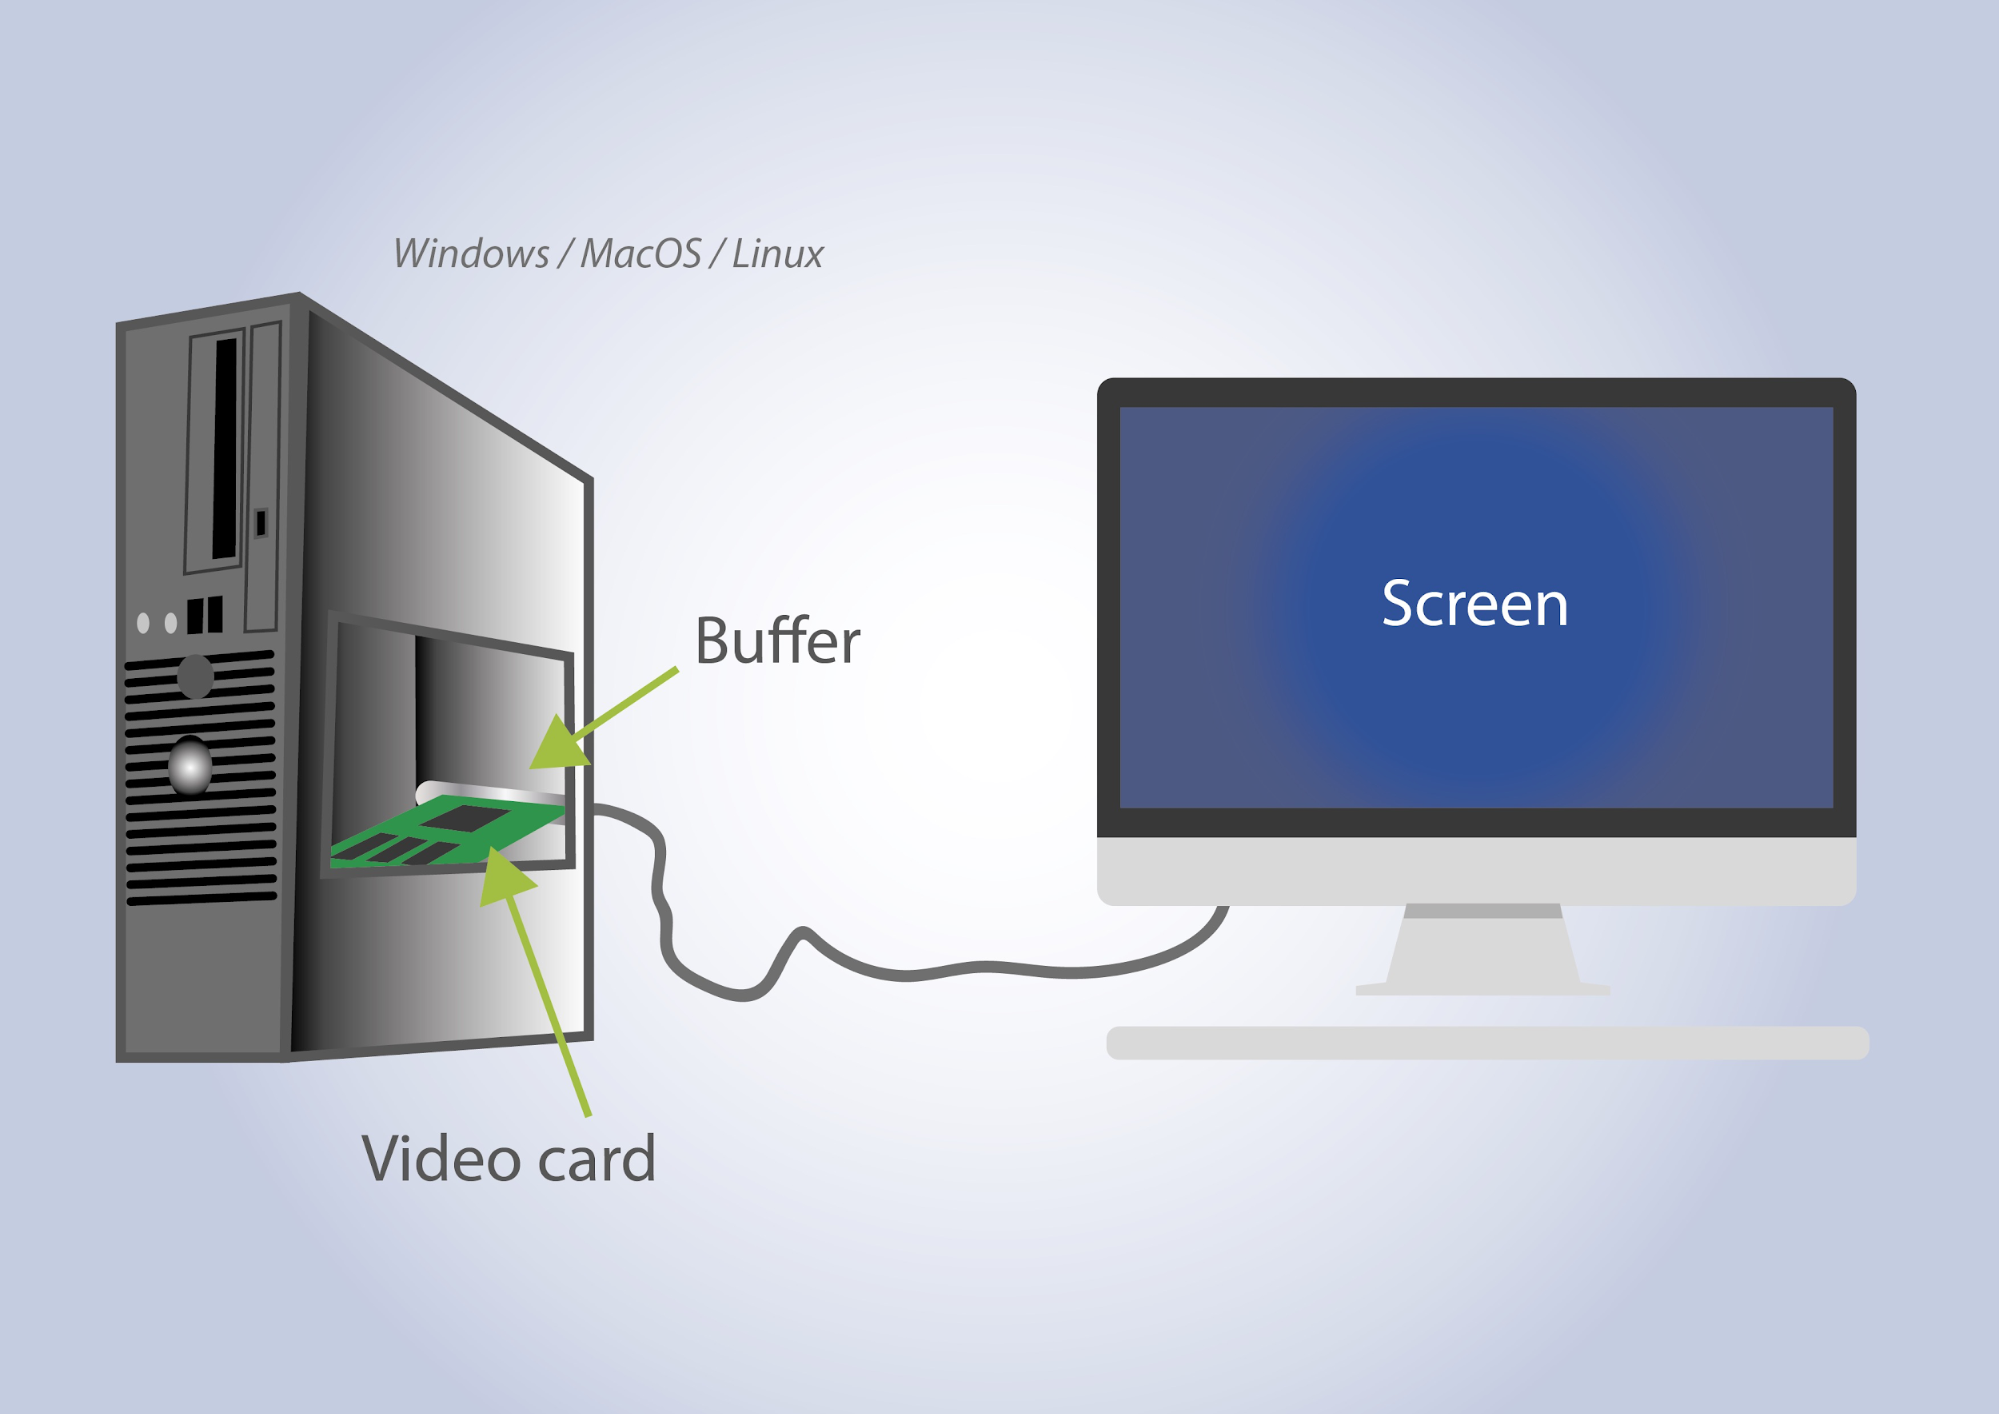 Illustration de la localisation du framebuffer de la carte vidéo sur une tour d'ordinateur. On voit qu'elle se situe juste avant la sortie vers le cable de l'écran.